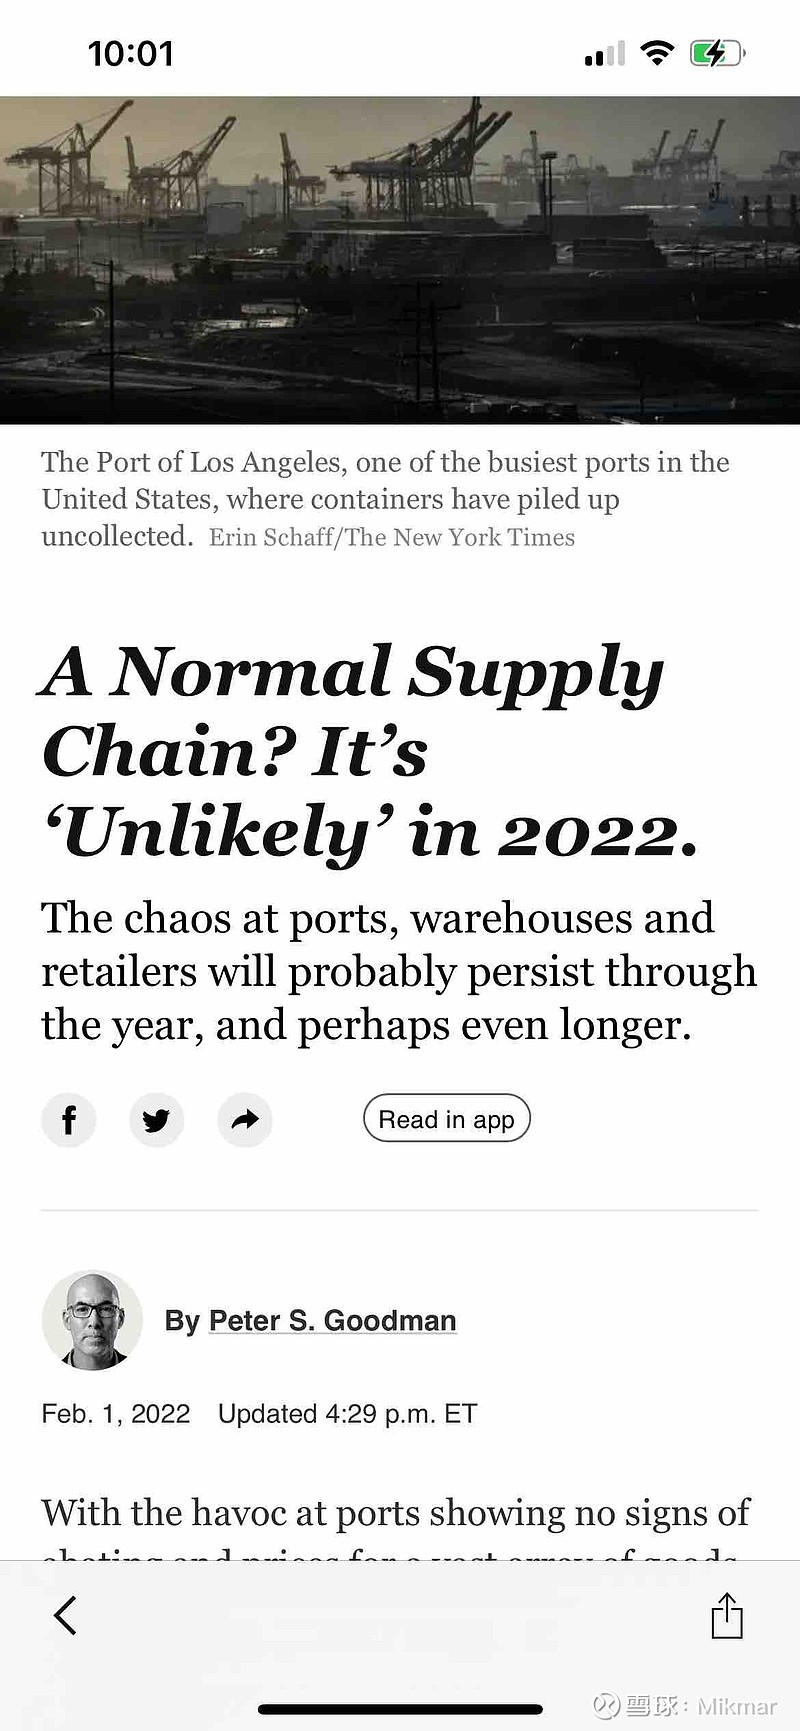 供应链混乱在2022年仍将持续